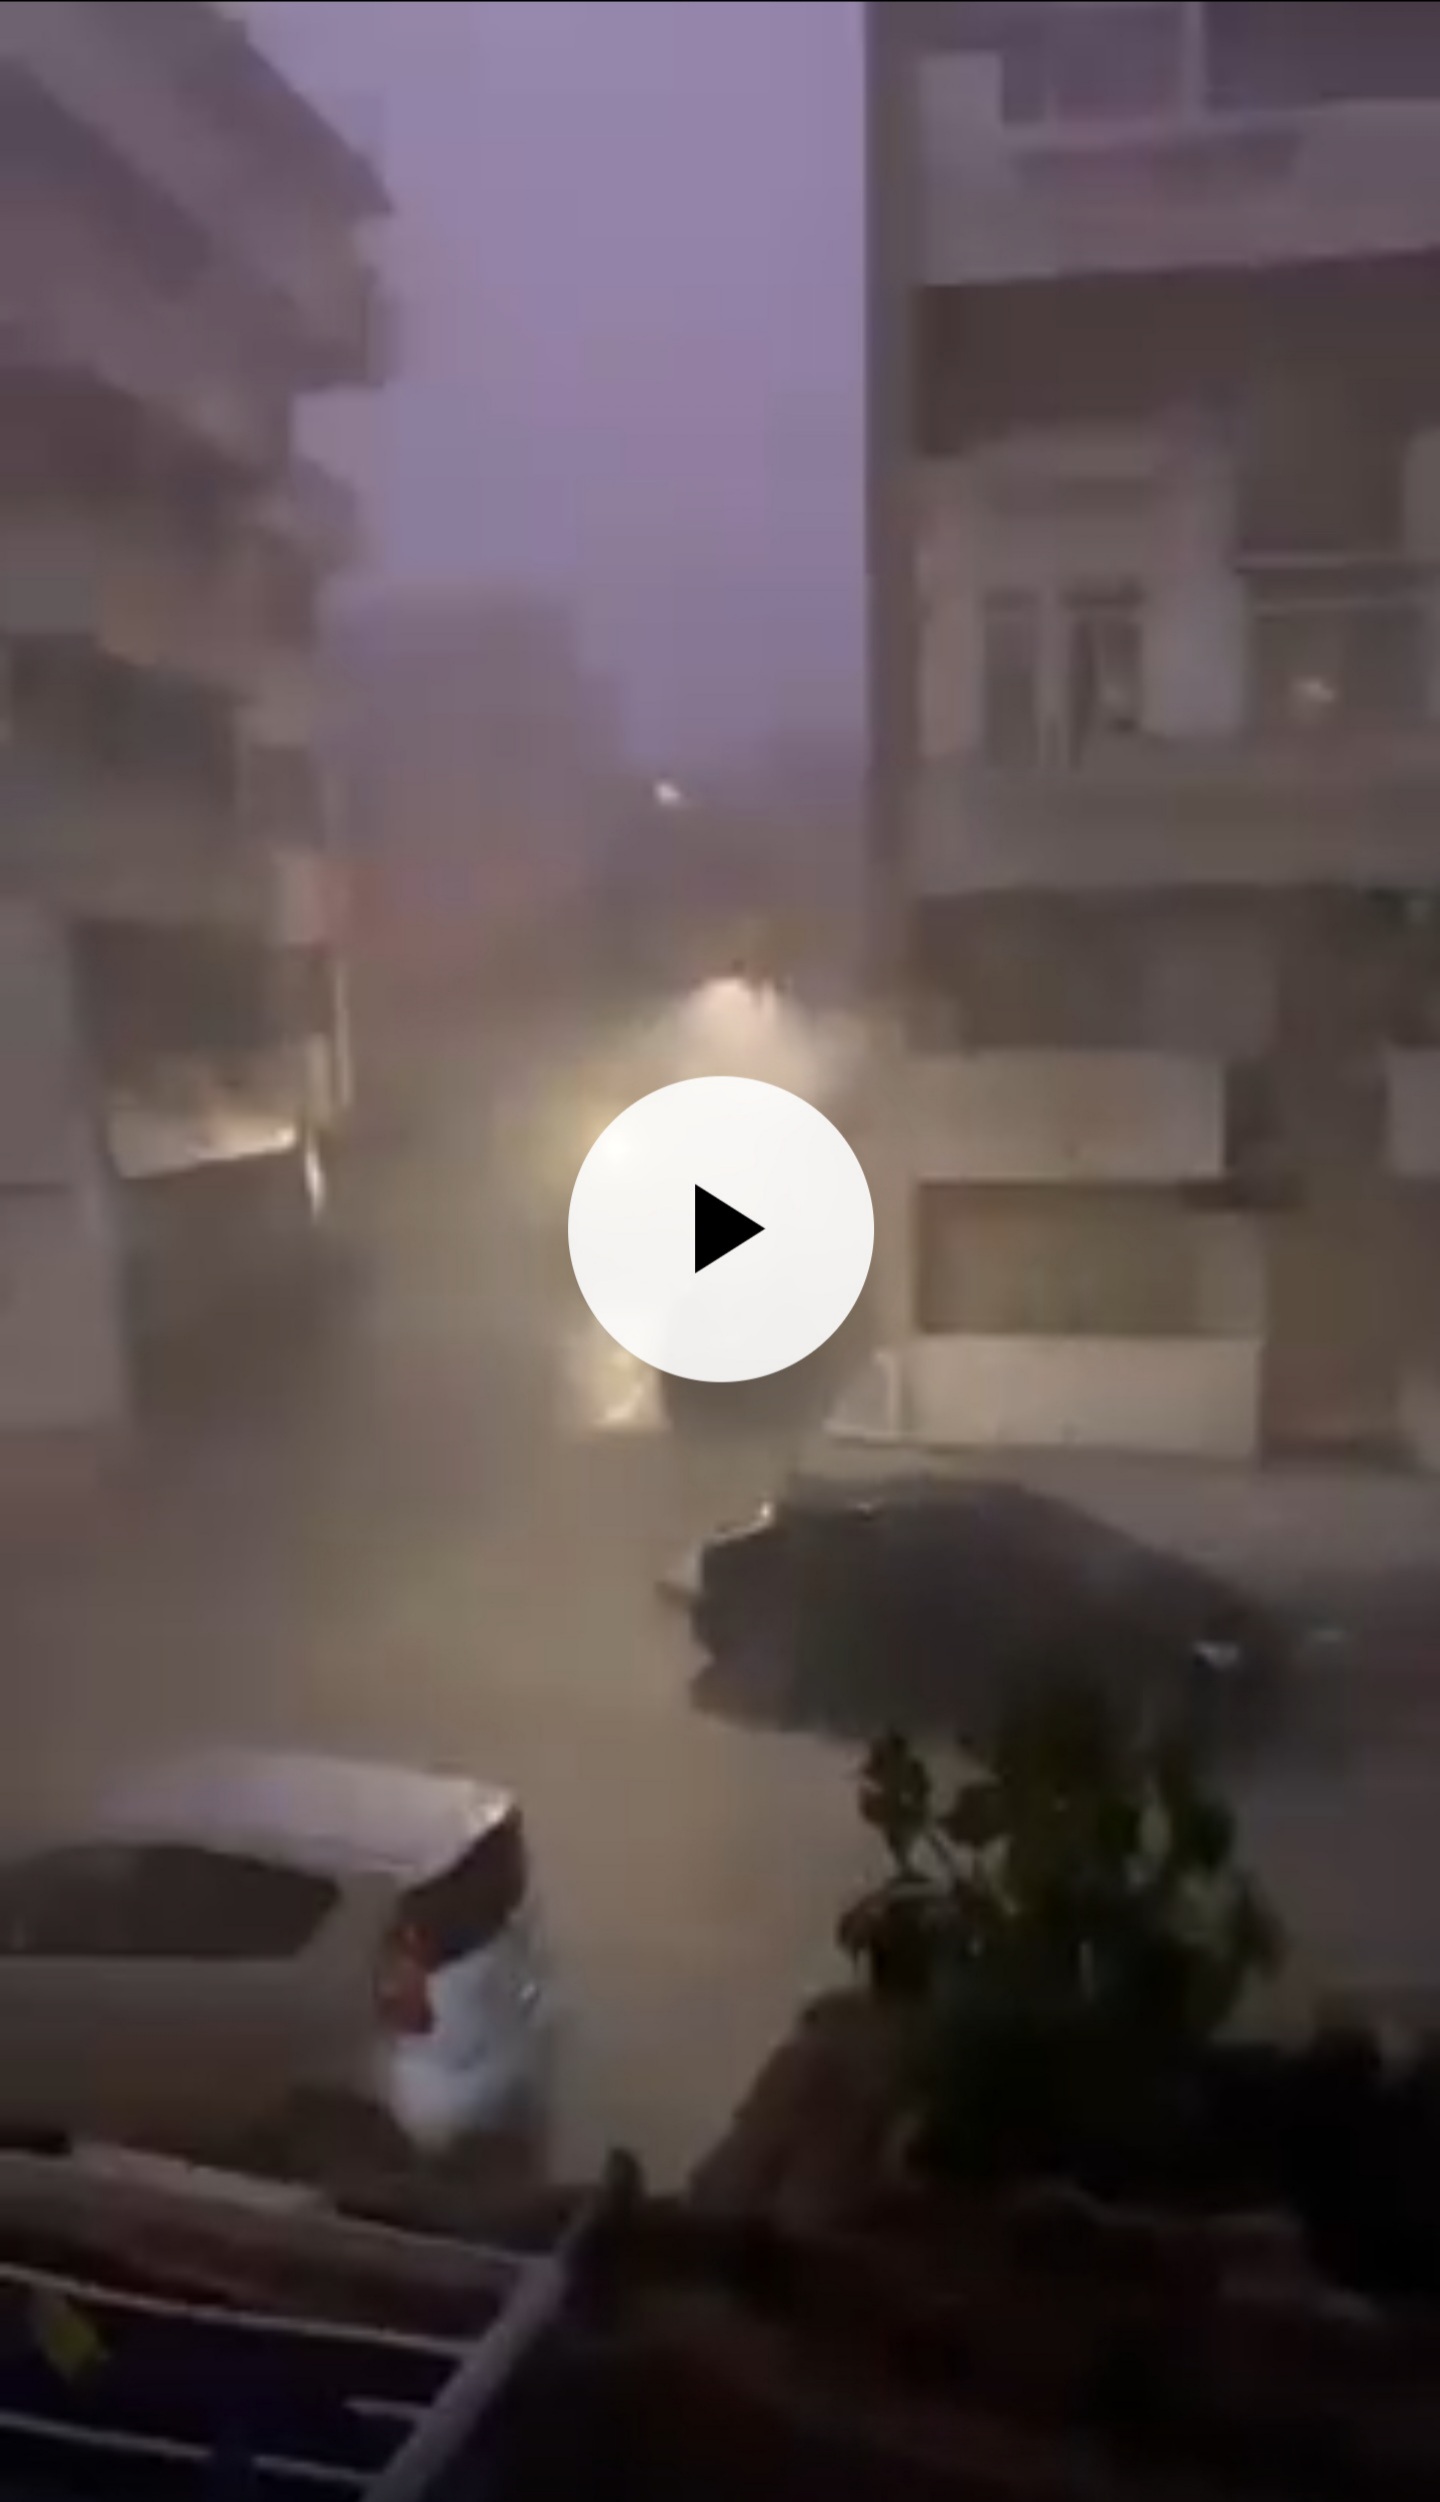 Meteo Sicilia: forte temporale su Marsala. Video e situazione live!